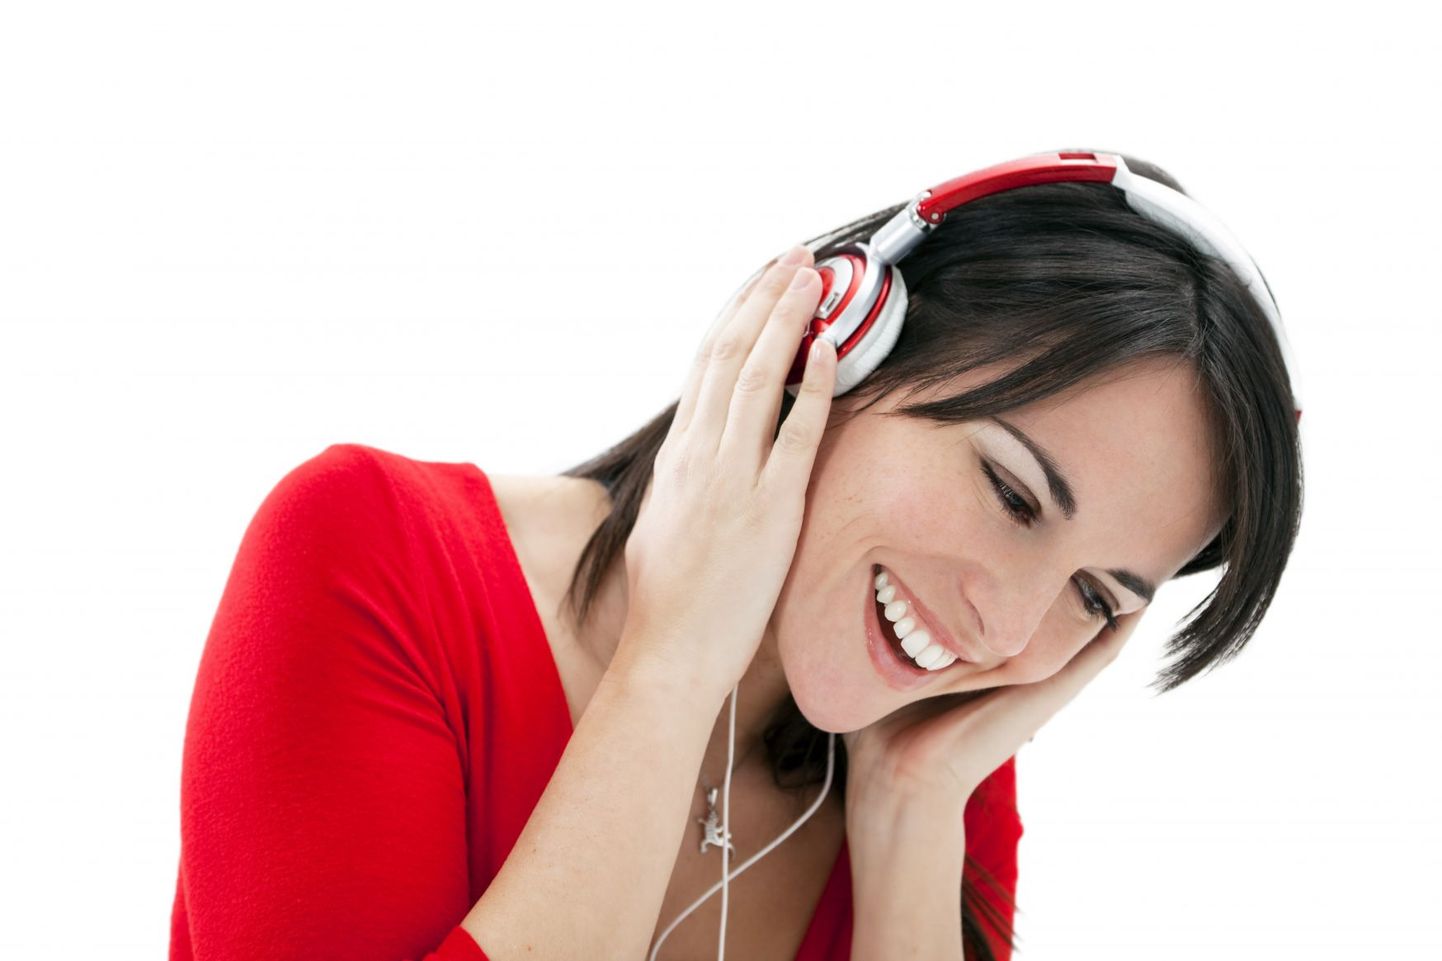 Rahustava muusika kuulamine aitab vähendada lennuhirmu.